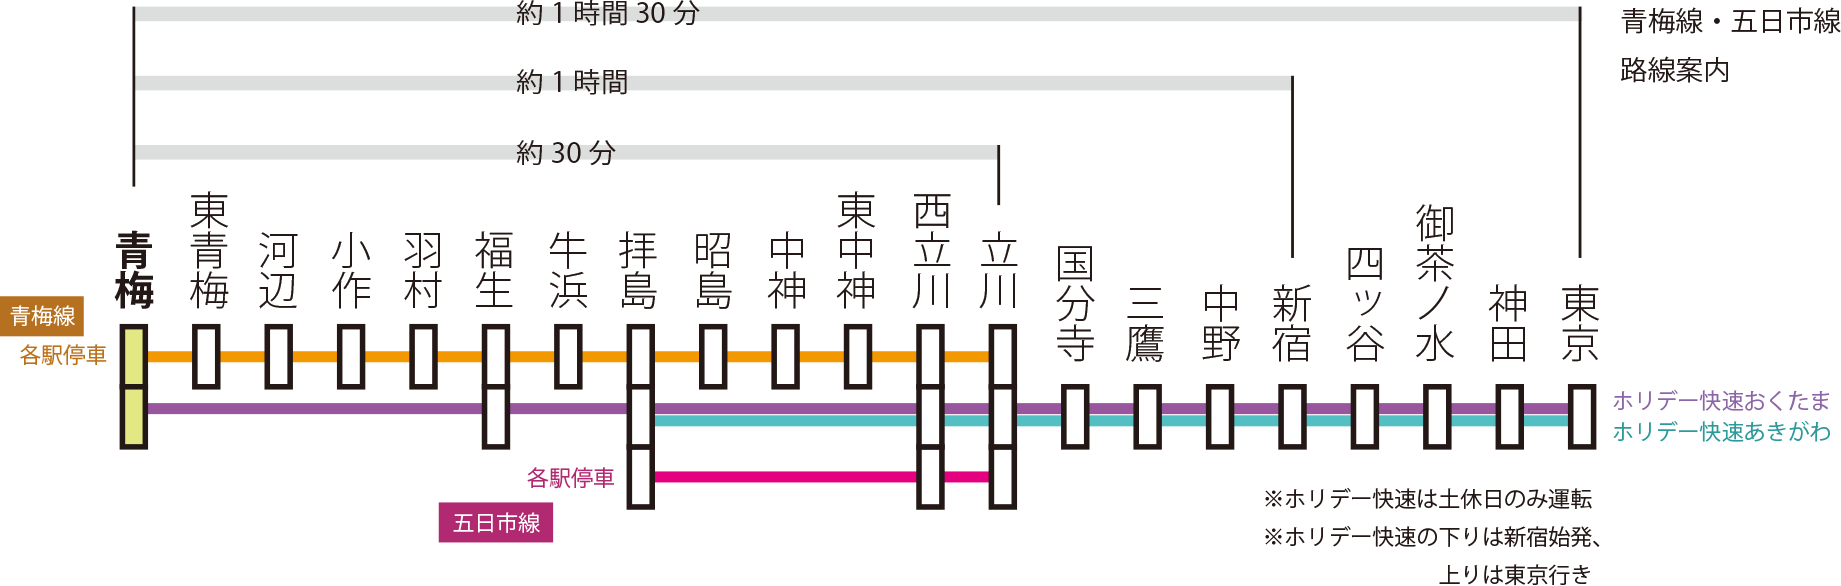 梅岩寺への路線図